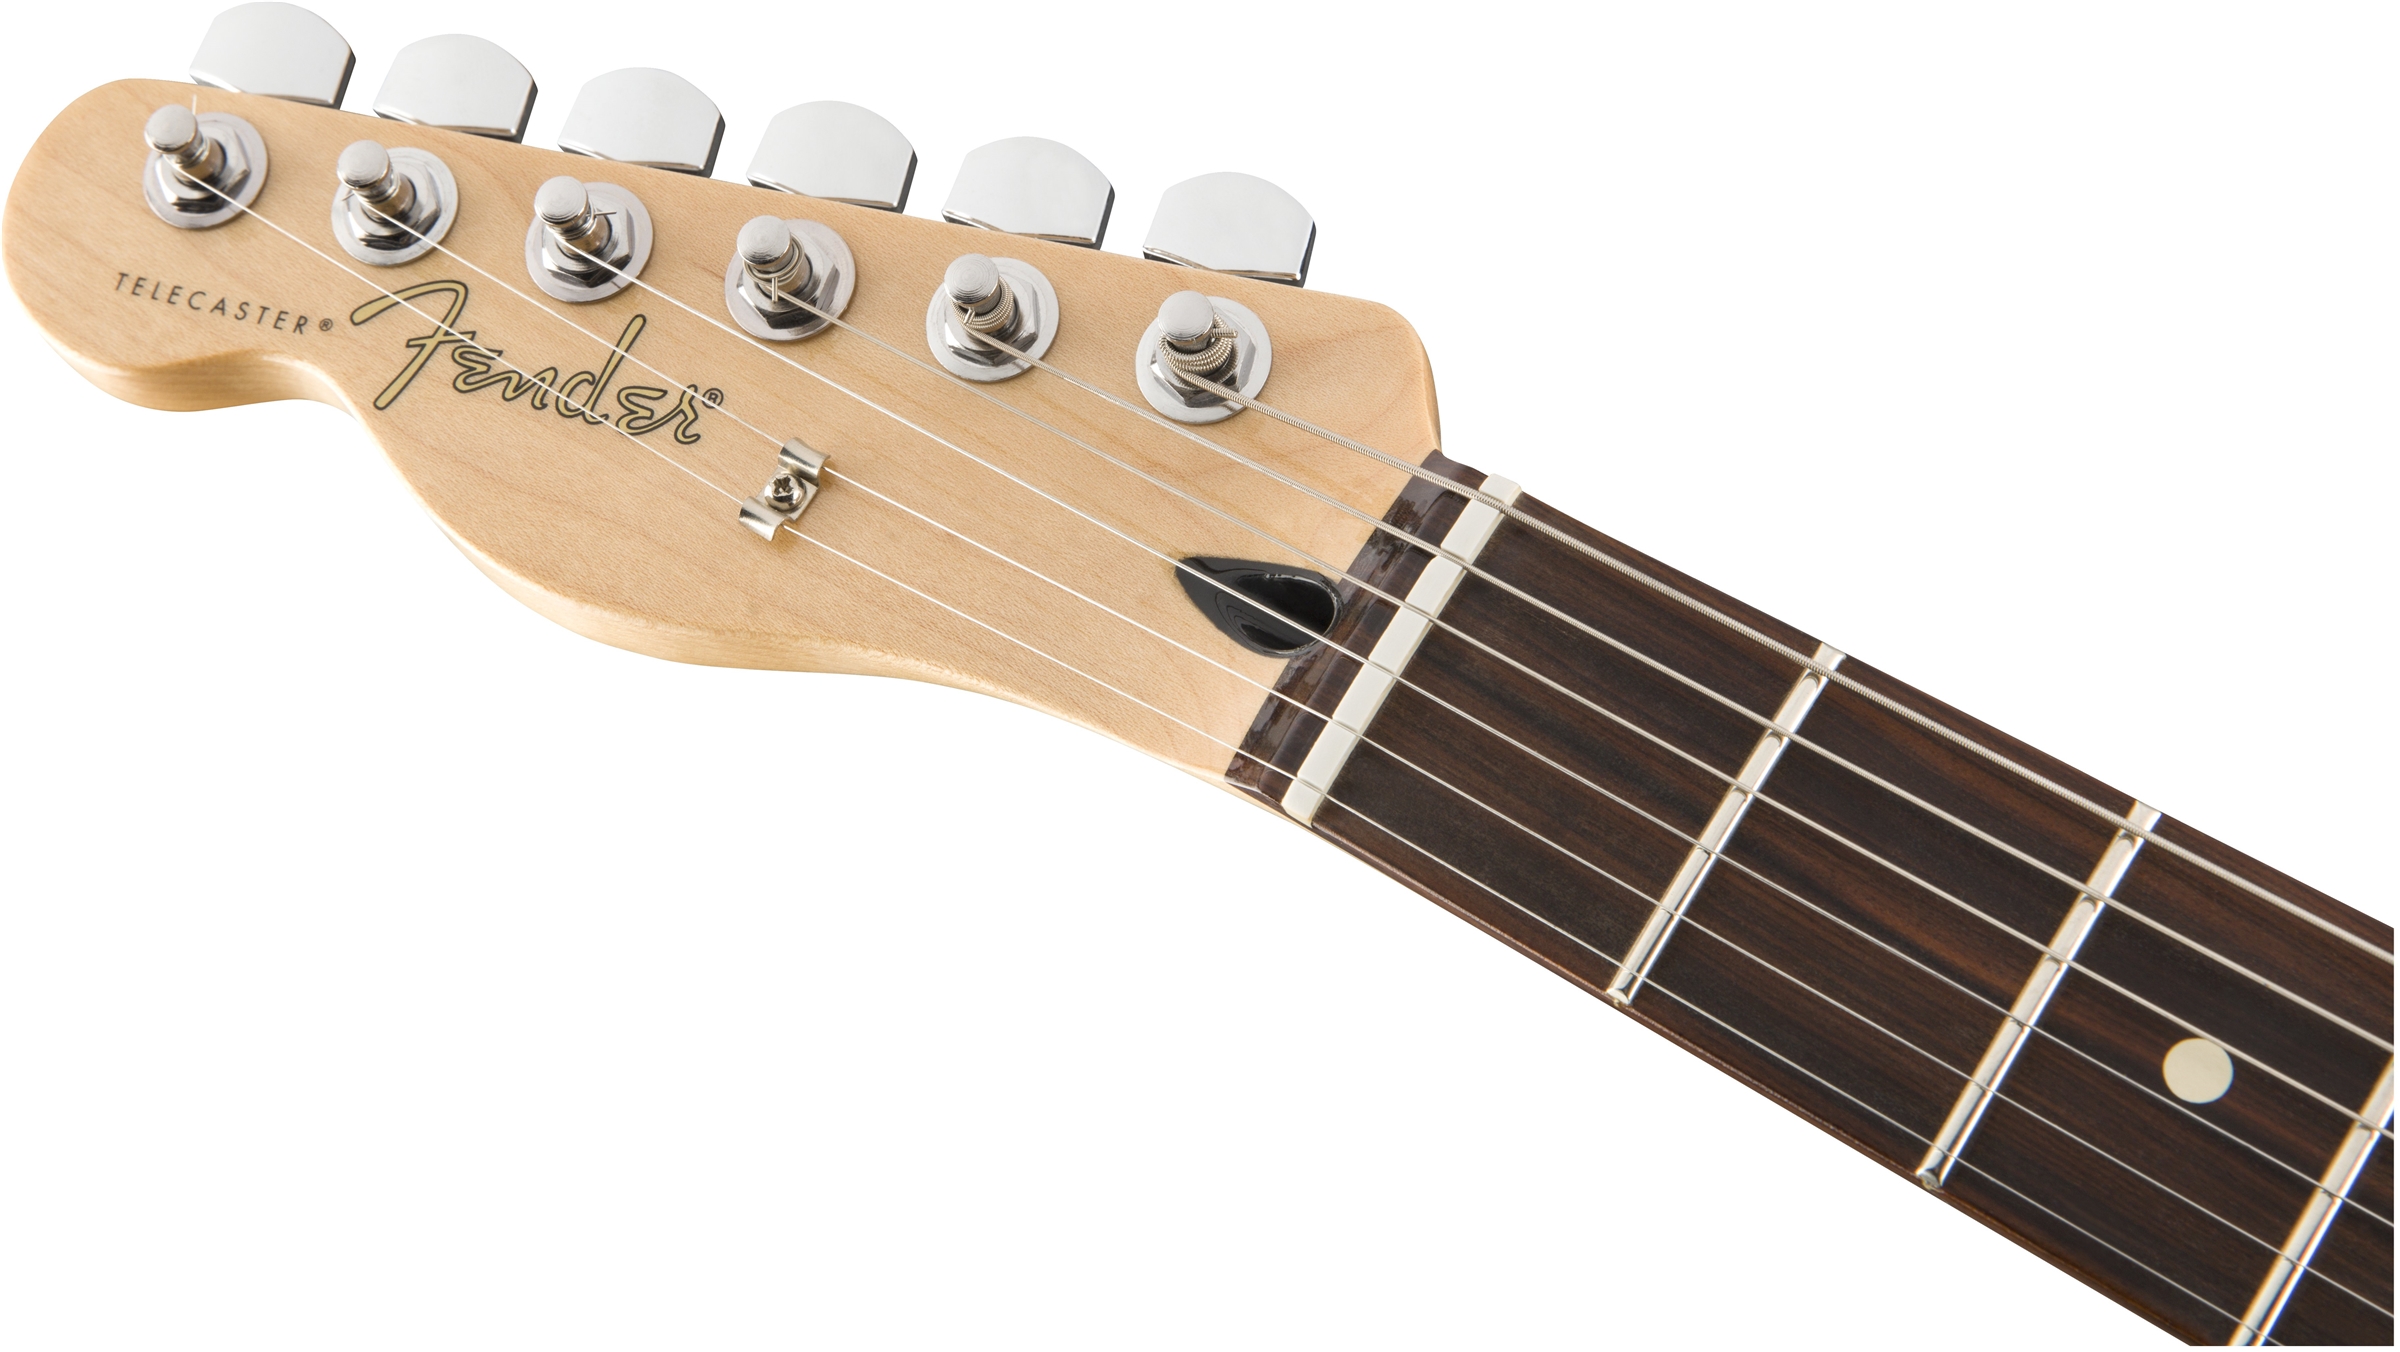 Fender Tele Player Lh Gaucher Mex Ss Pf - Polar White - Linkshandige elektrische gitaar - Variation 4